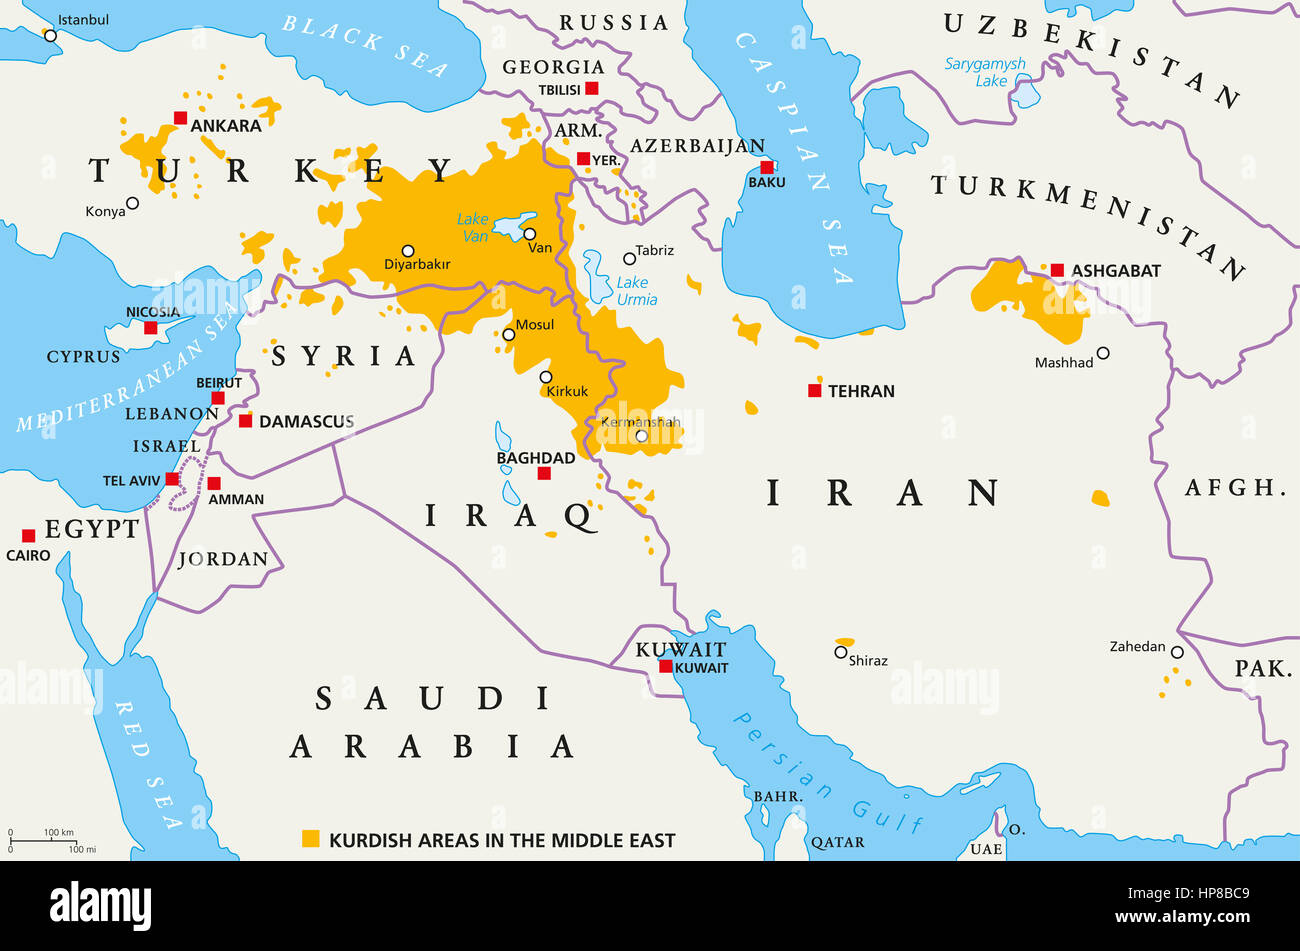 Les zones kurdes au Moyen-Orient, une carte politique. Pays avec leurs capitales, les frontières nationales et des villes importantes. Les zones kurdes en orange. Banque D'Images